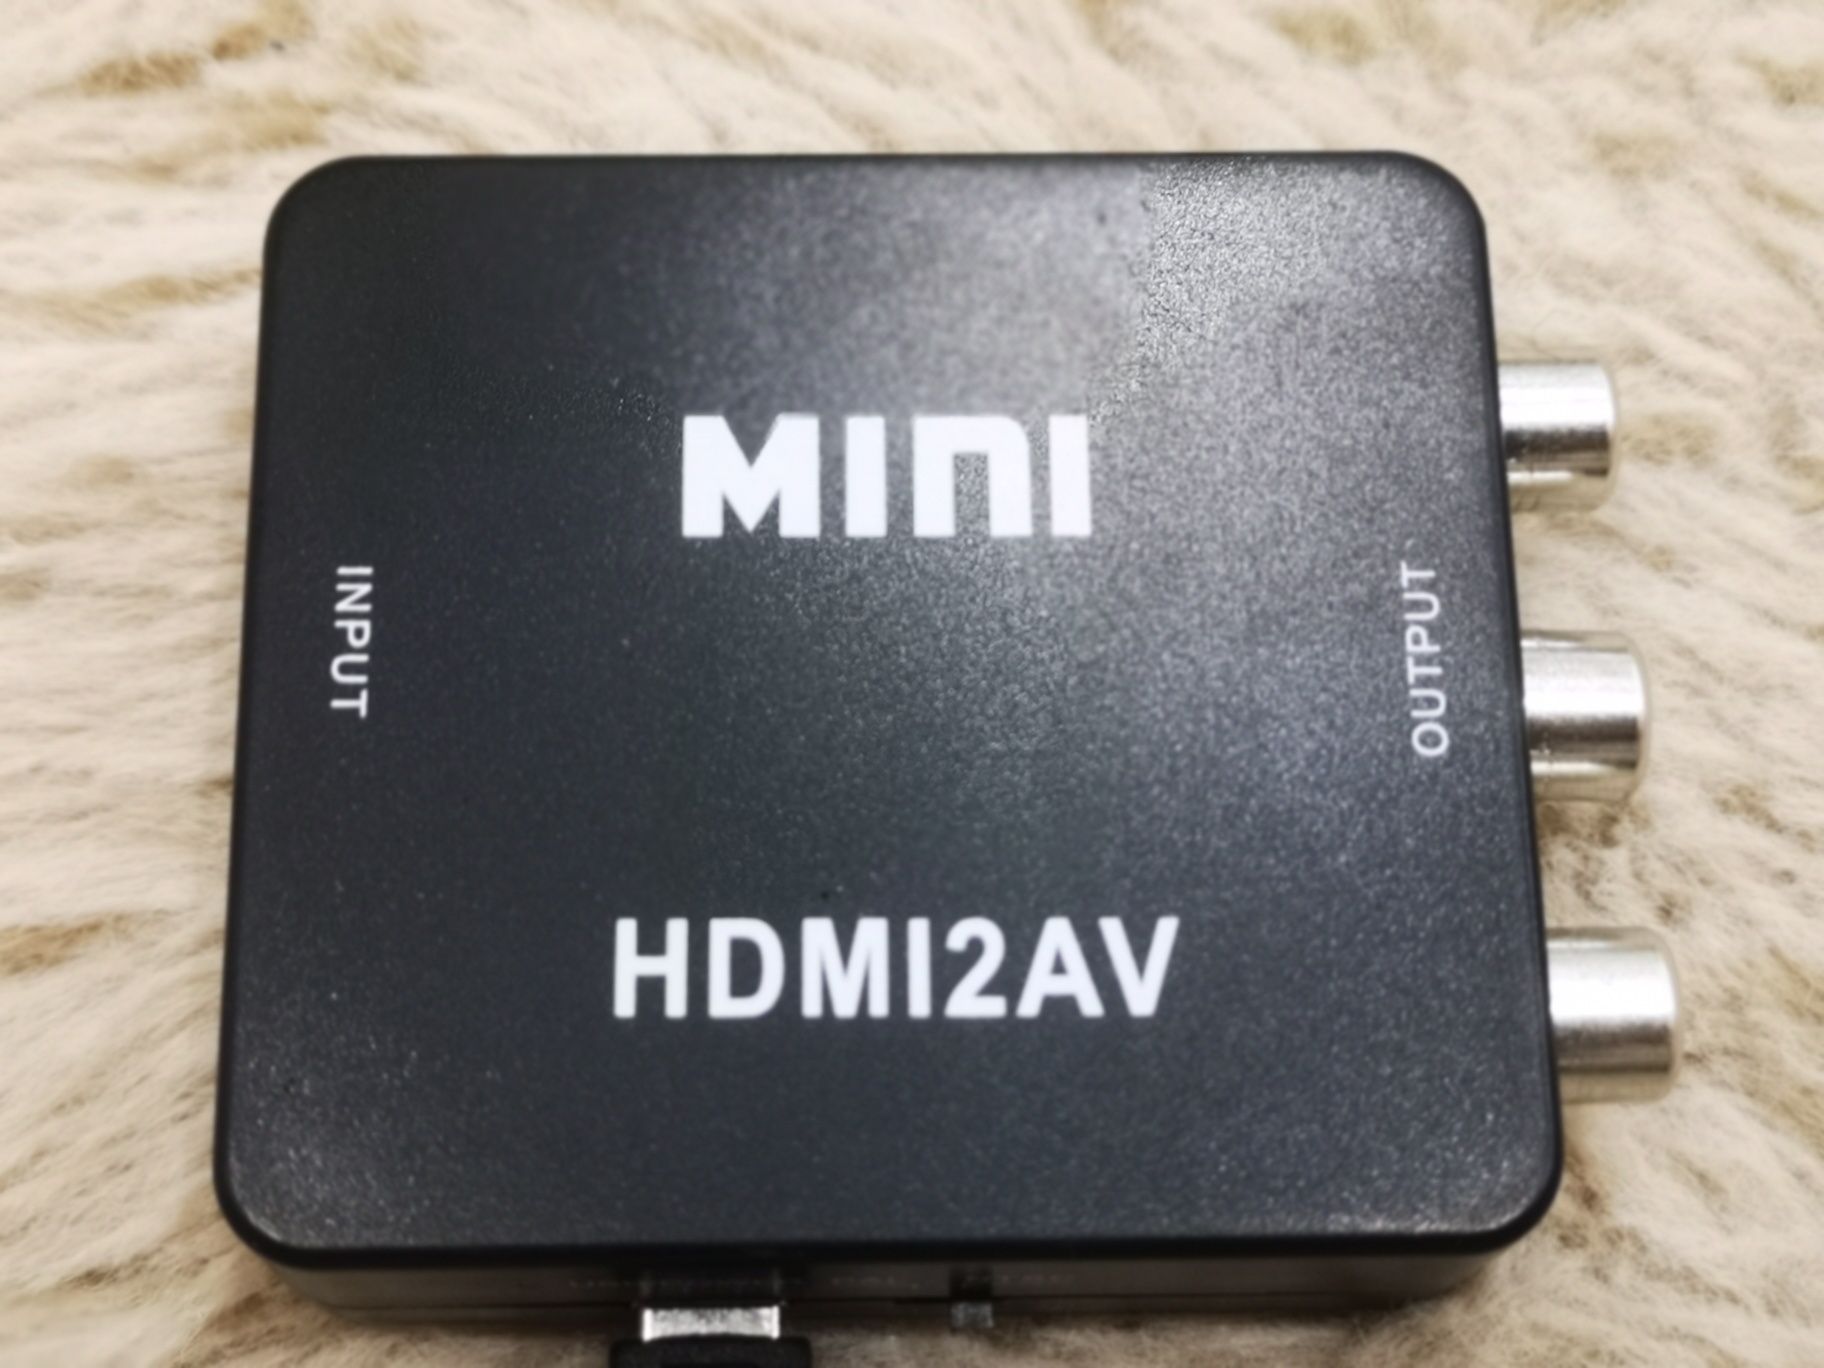 Mini HDMI to cvbs